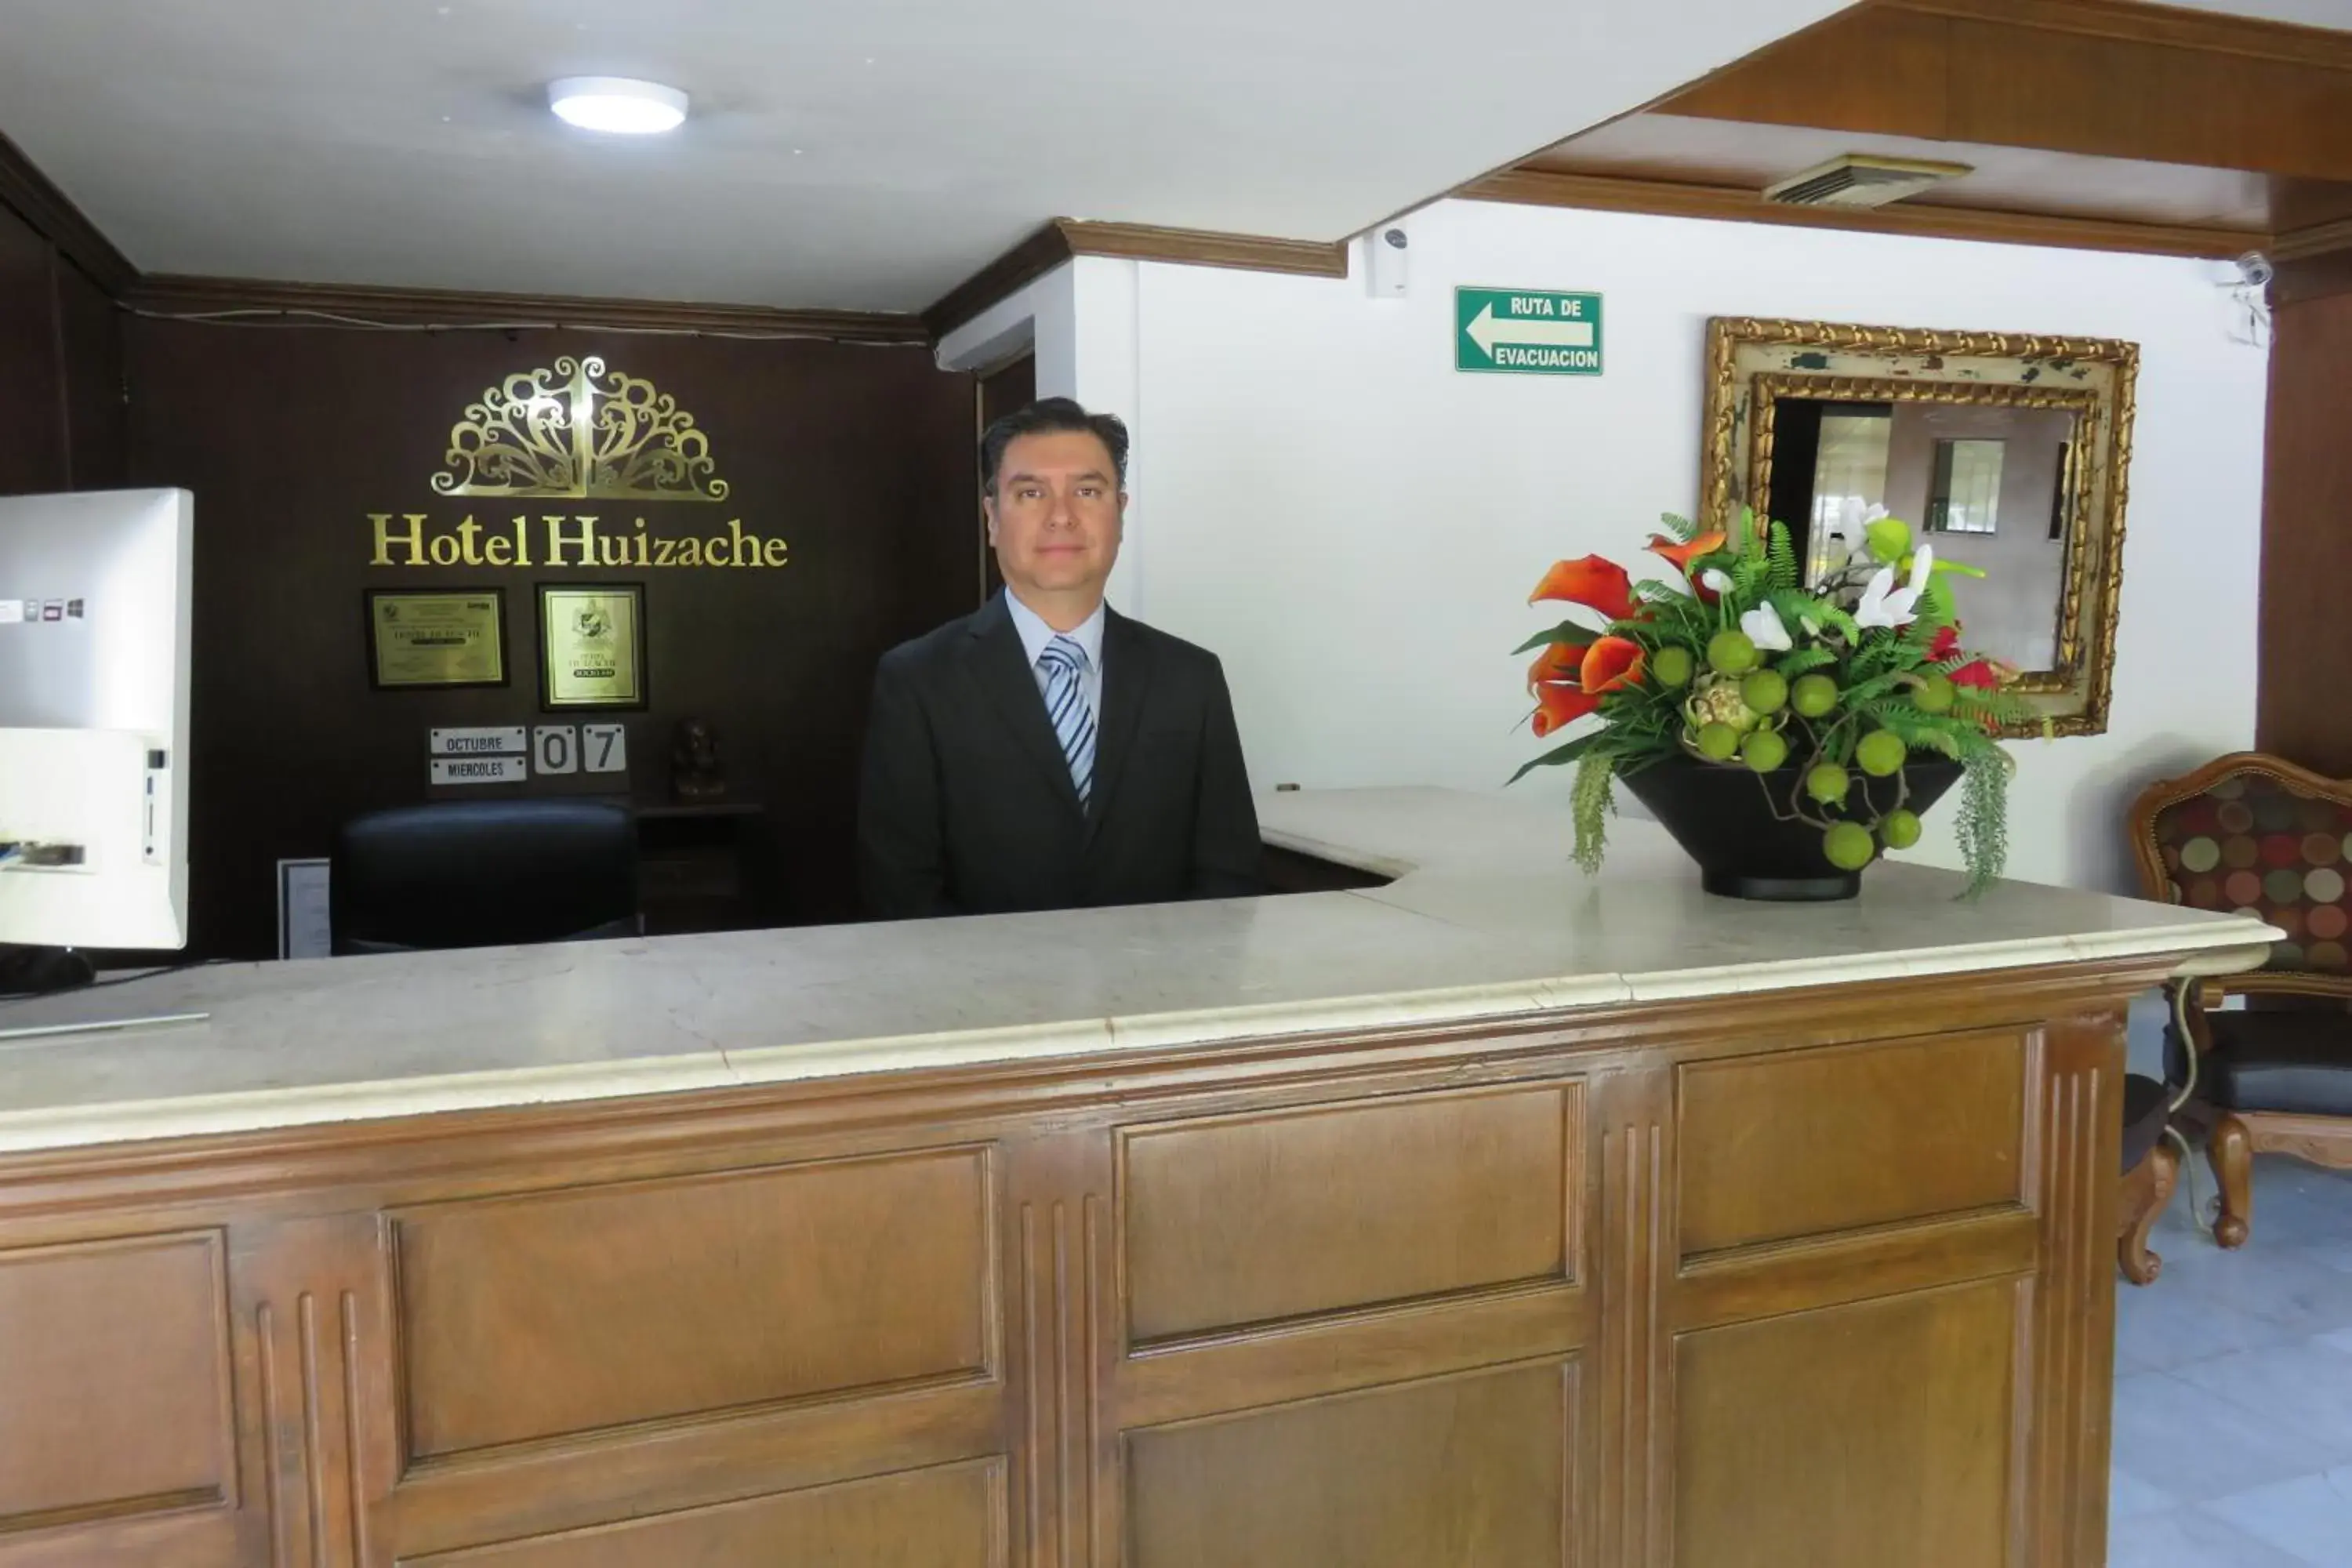 Lobby or reception, Lobby/Reception in Hotel Huizache